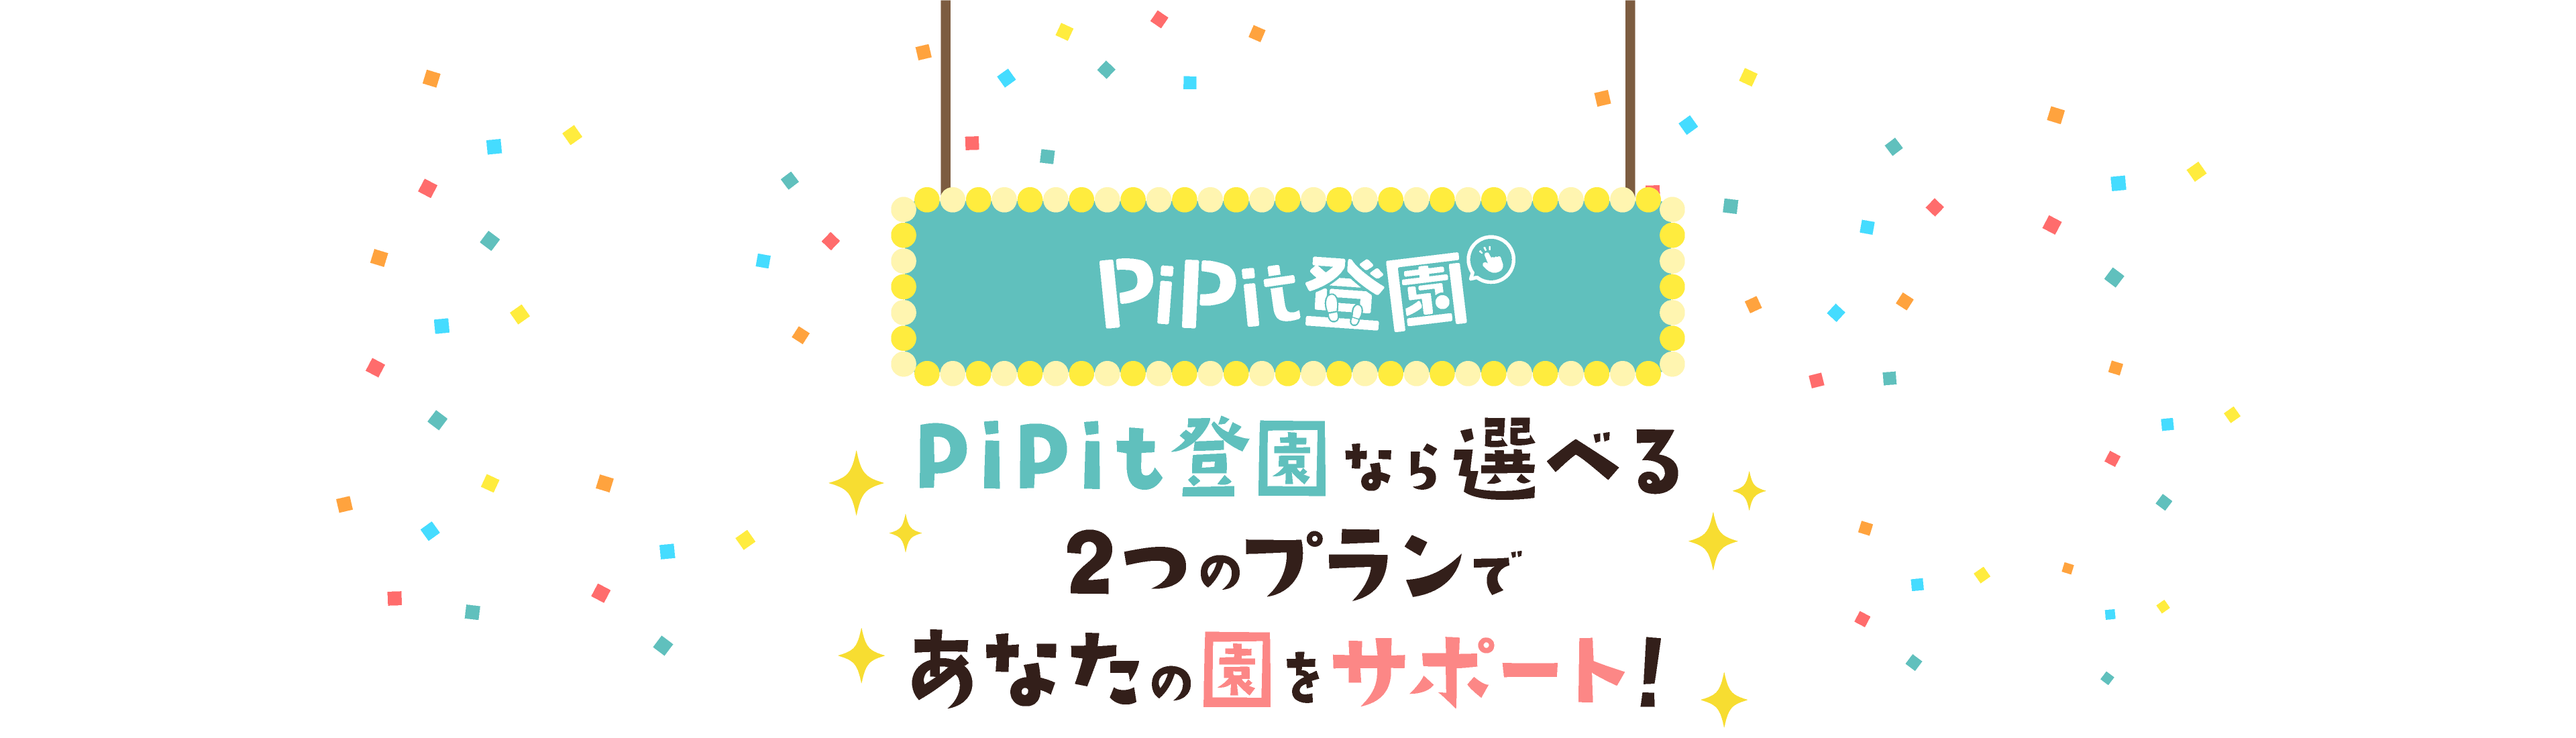 PiPit登園 -PiPit登園なら選べる2つのプランであなたの園をサポート